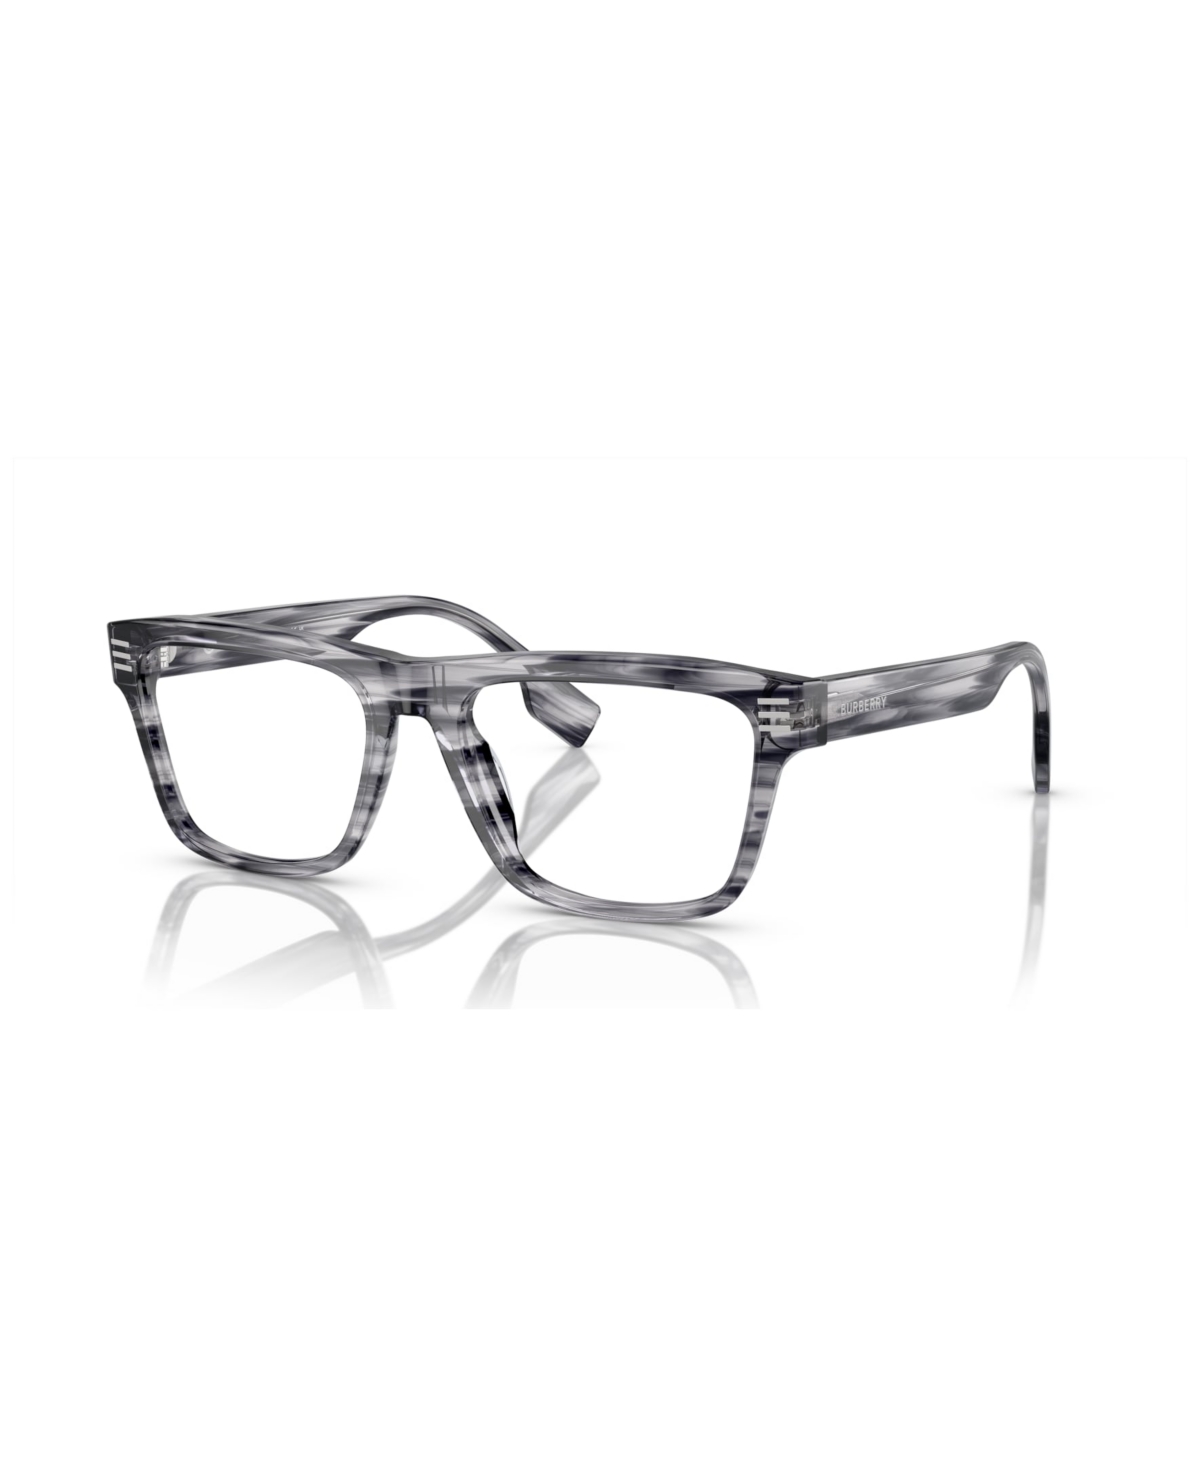 Men's Eyeglasses, BE2387 - Black